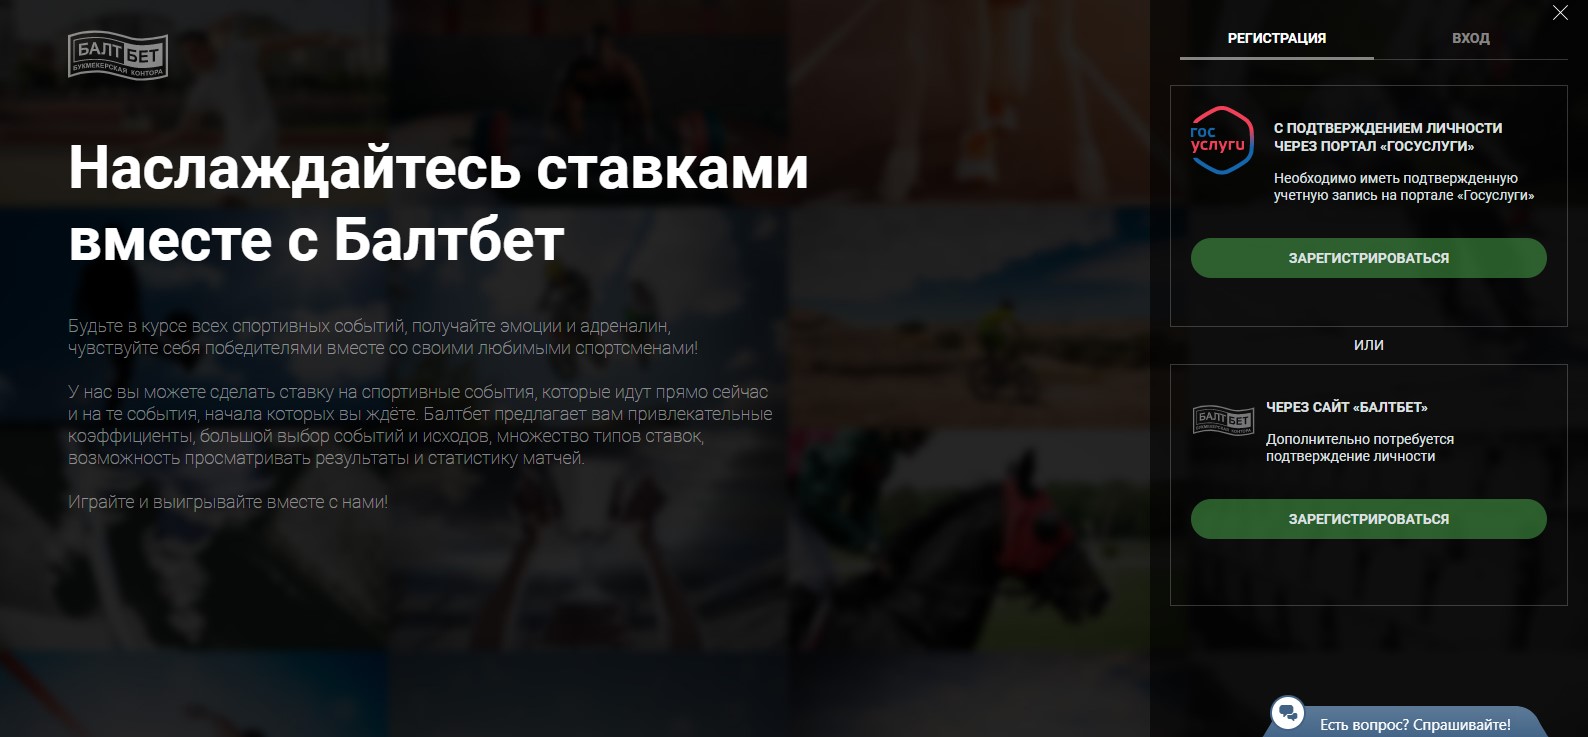 Бет конструктор букмекерская контора что это карты онлайн играть бесплатно и без регистрации на русском языке